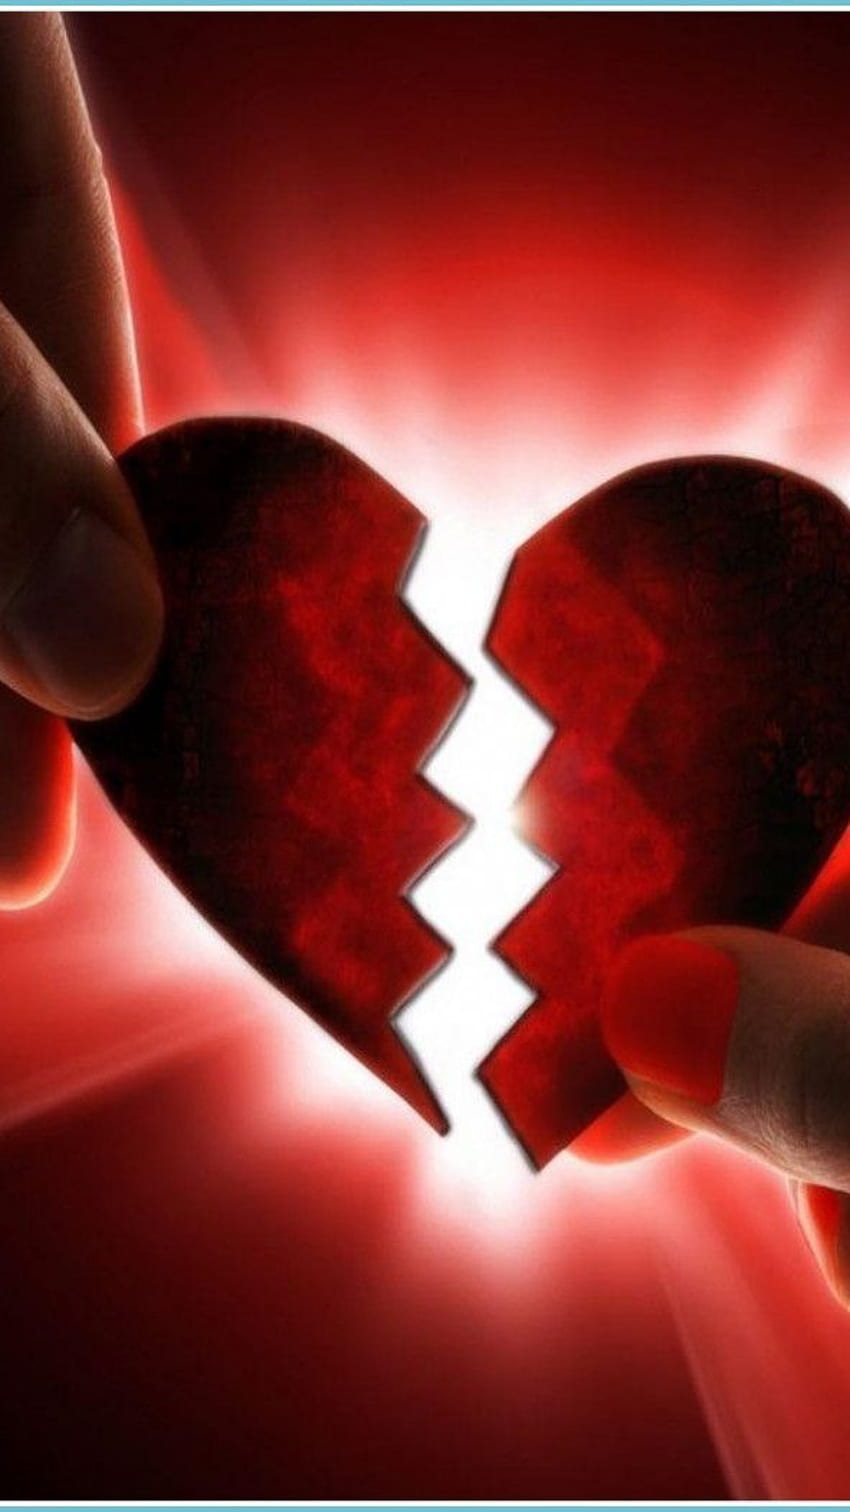 Broken Heart, red heart broken, red heart, broken HD phone wallpaper